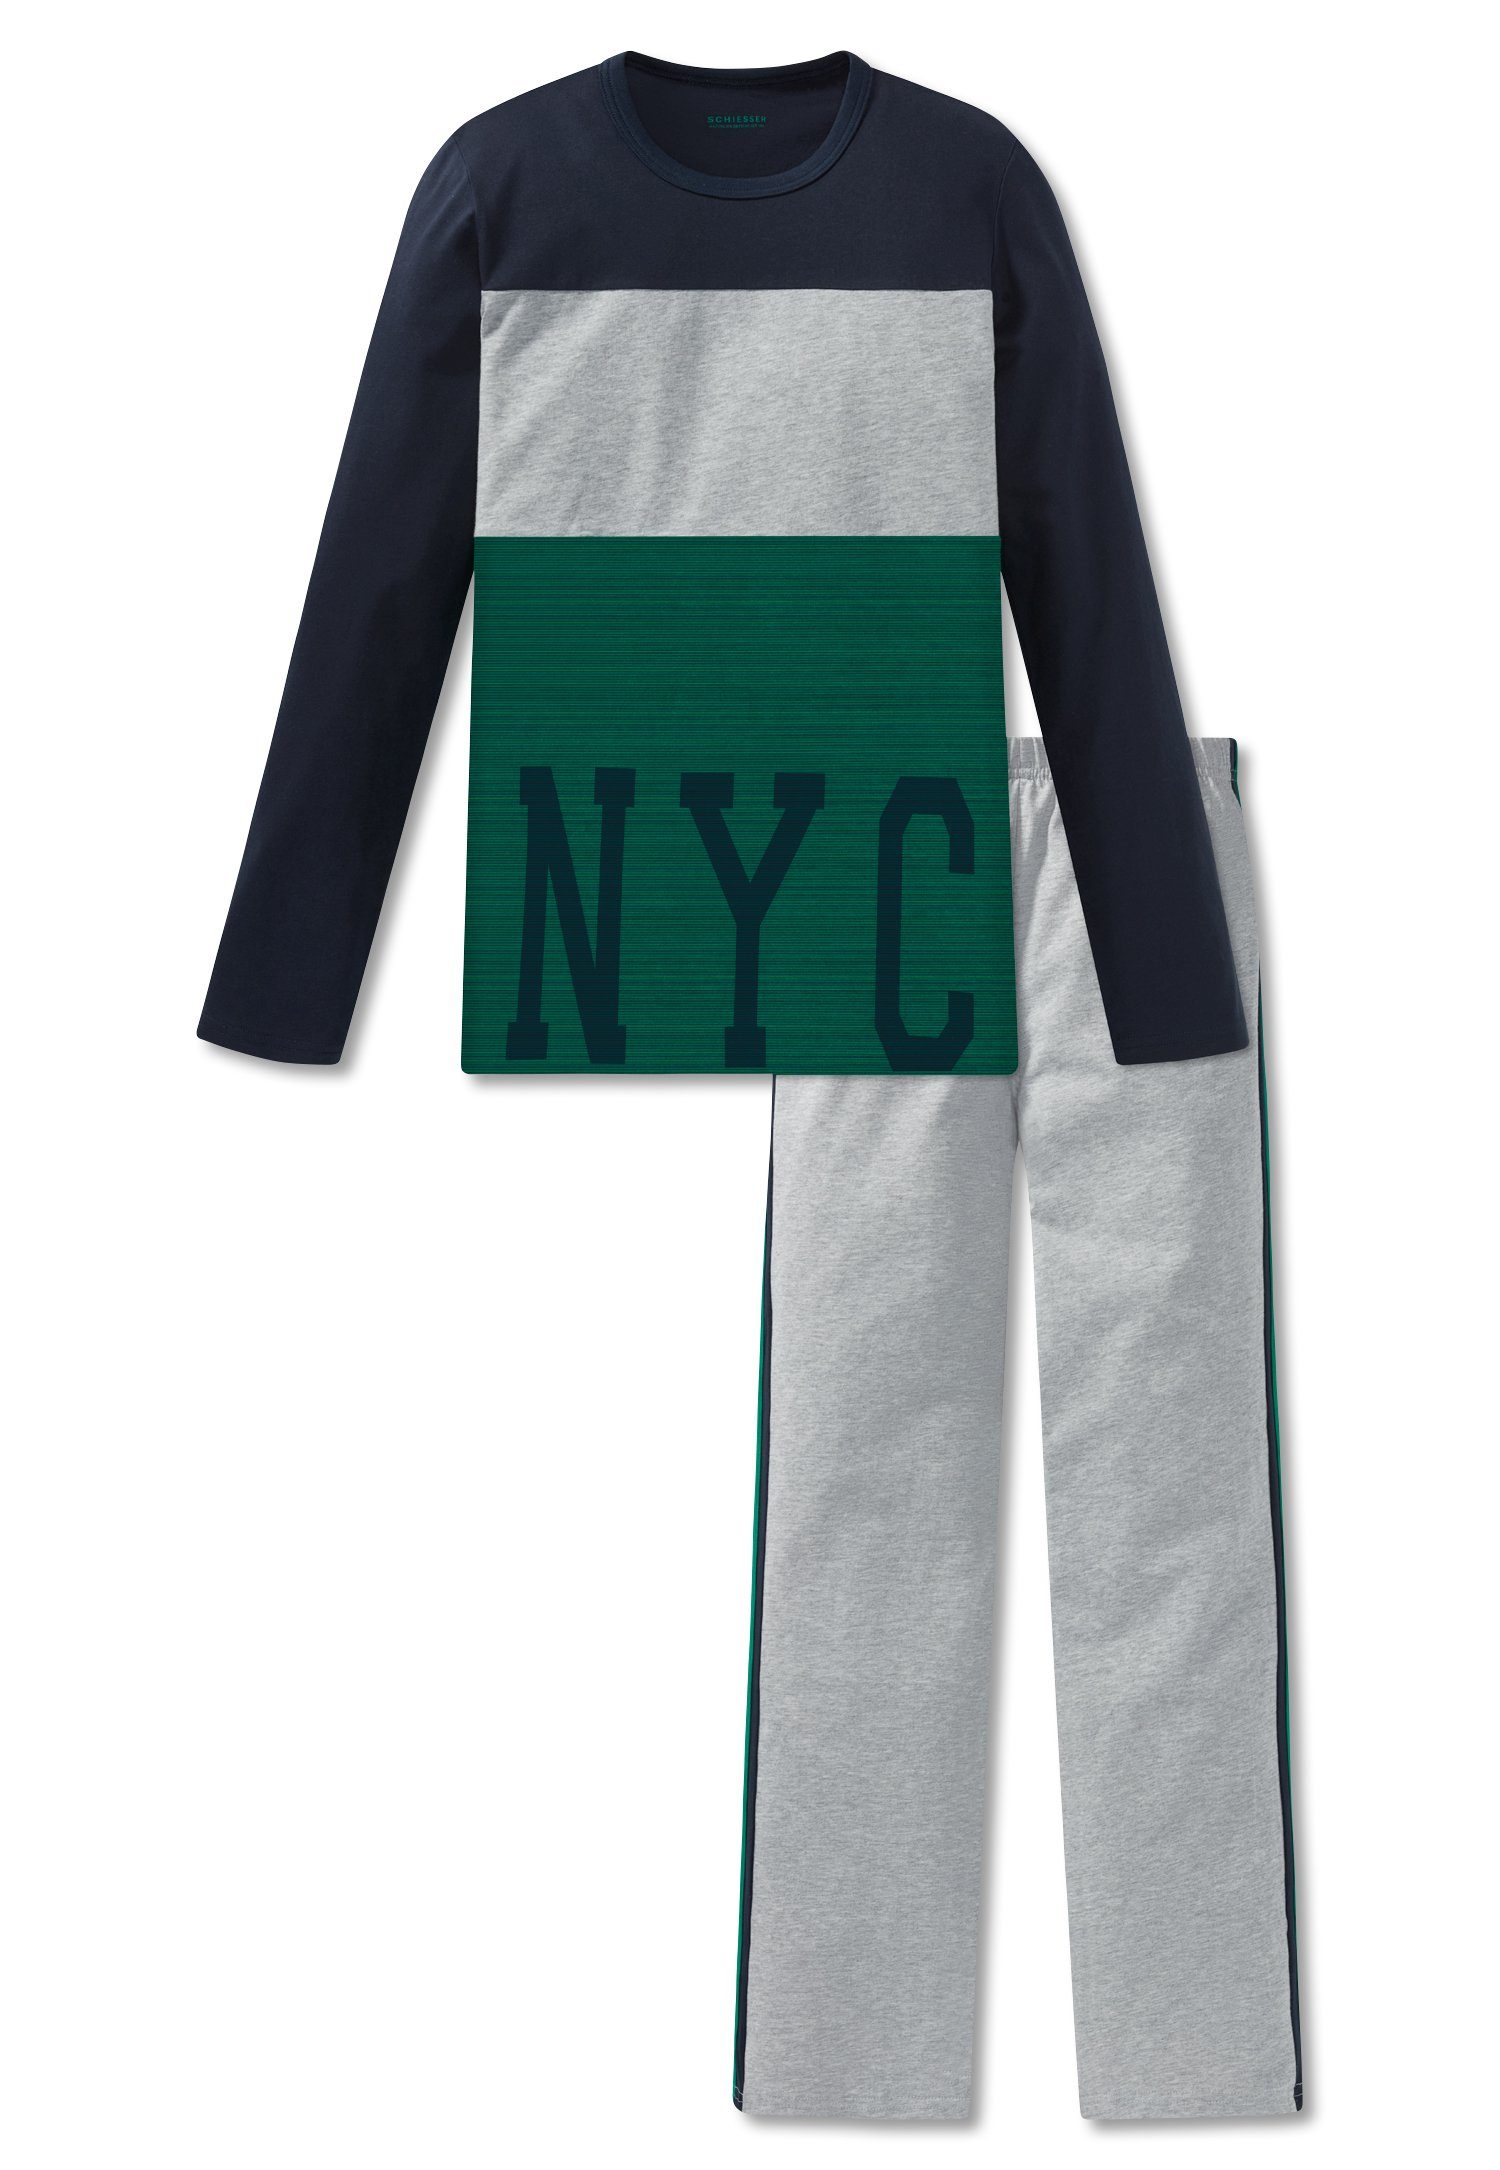 Schiesser Schlafanzug Green Power lang, Schlafanzug Jungen Baumwolle, Set) Colour-Blocking-Look (Set, 100